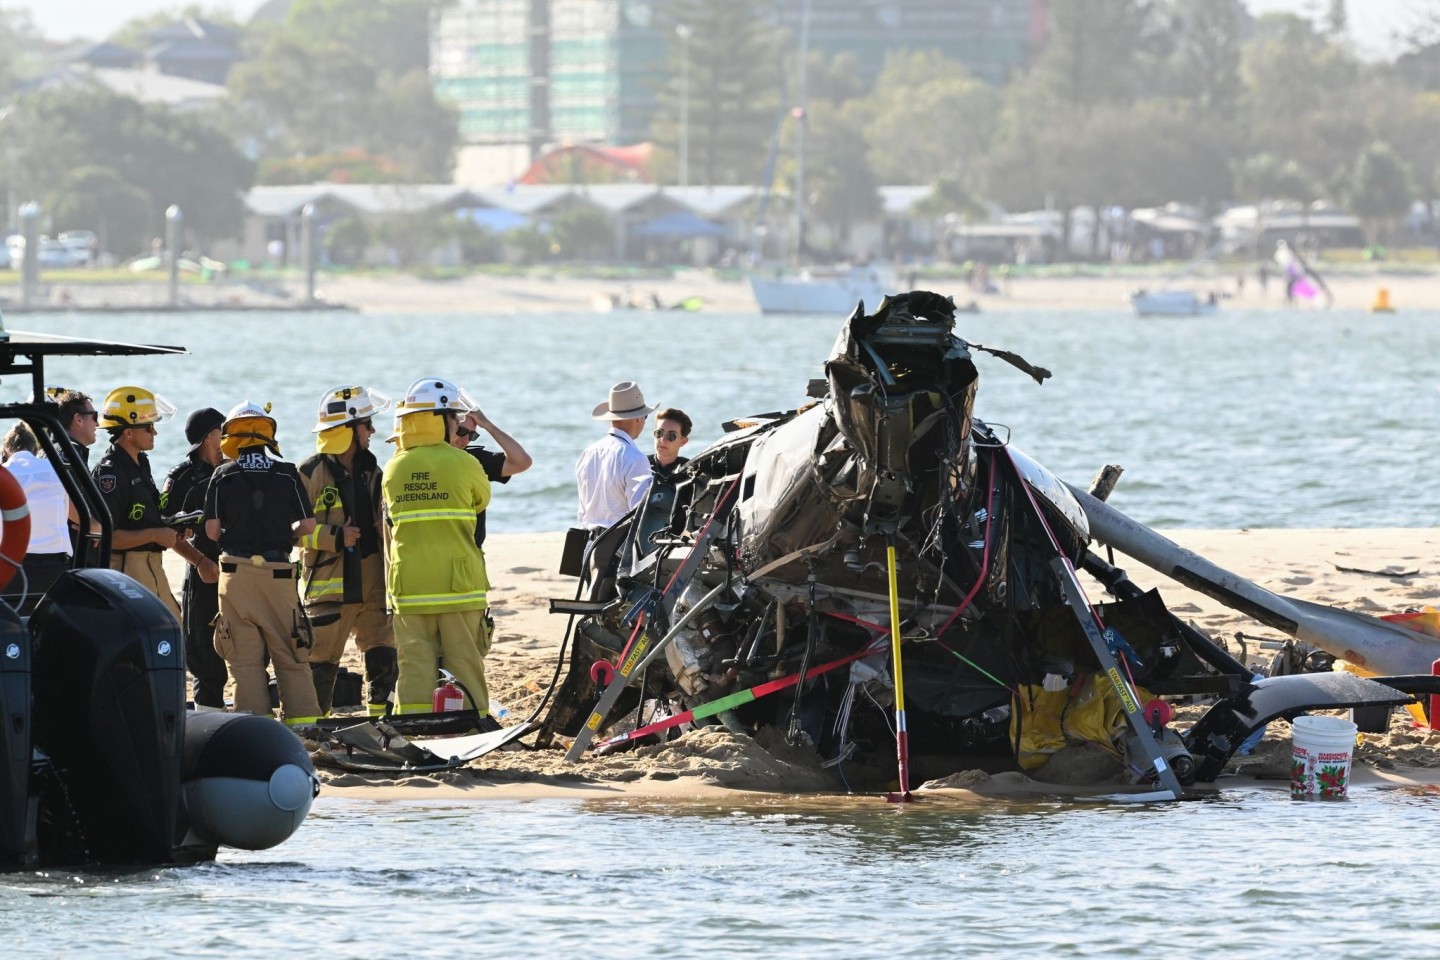 Rettungskräfte sind neben dem abgestürzten Hubschrauber in der Nähe von Seaworld an der Gold Coast im Einsatz.